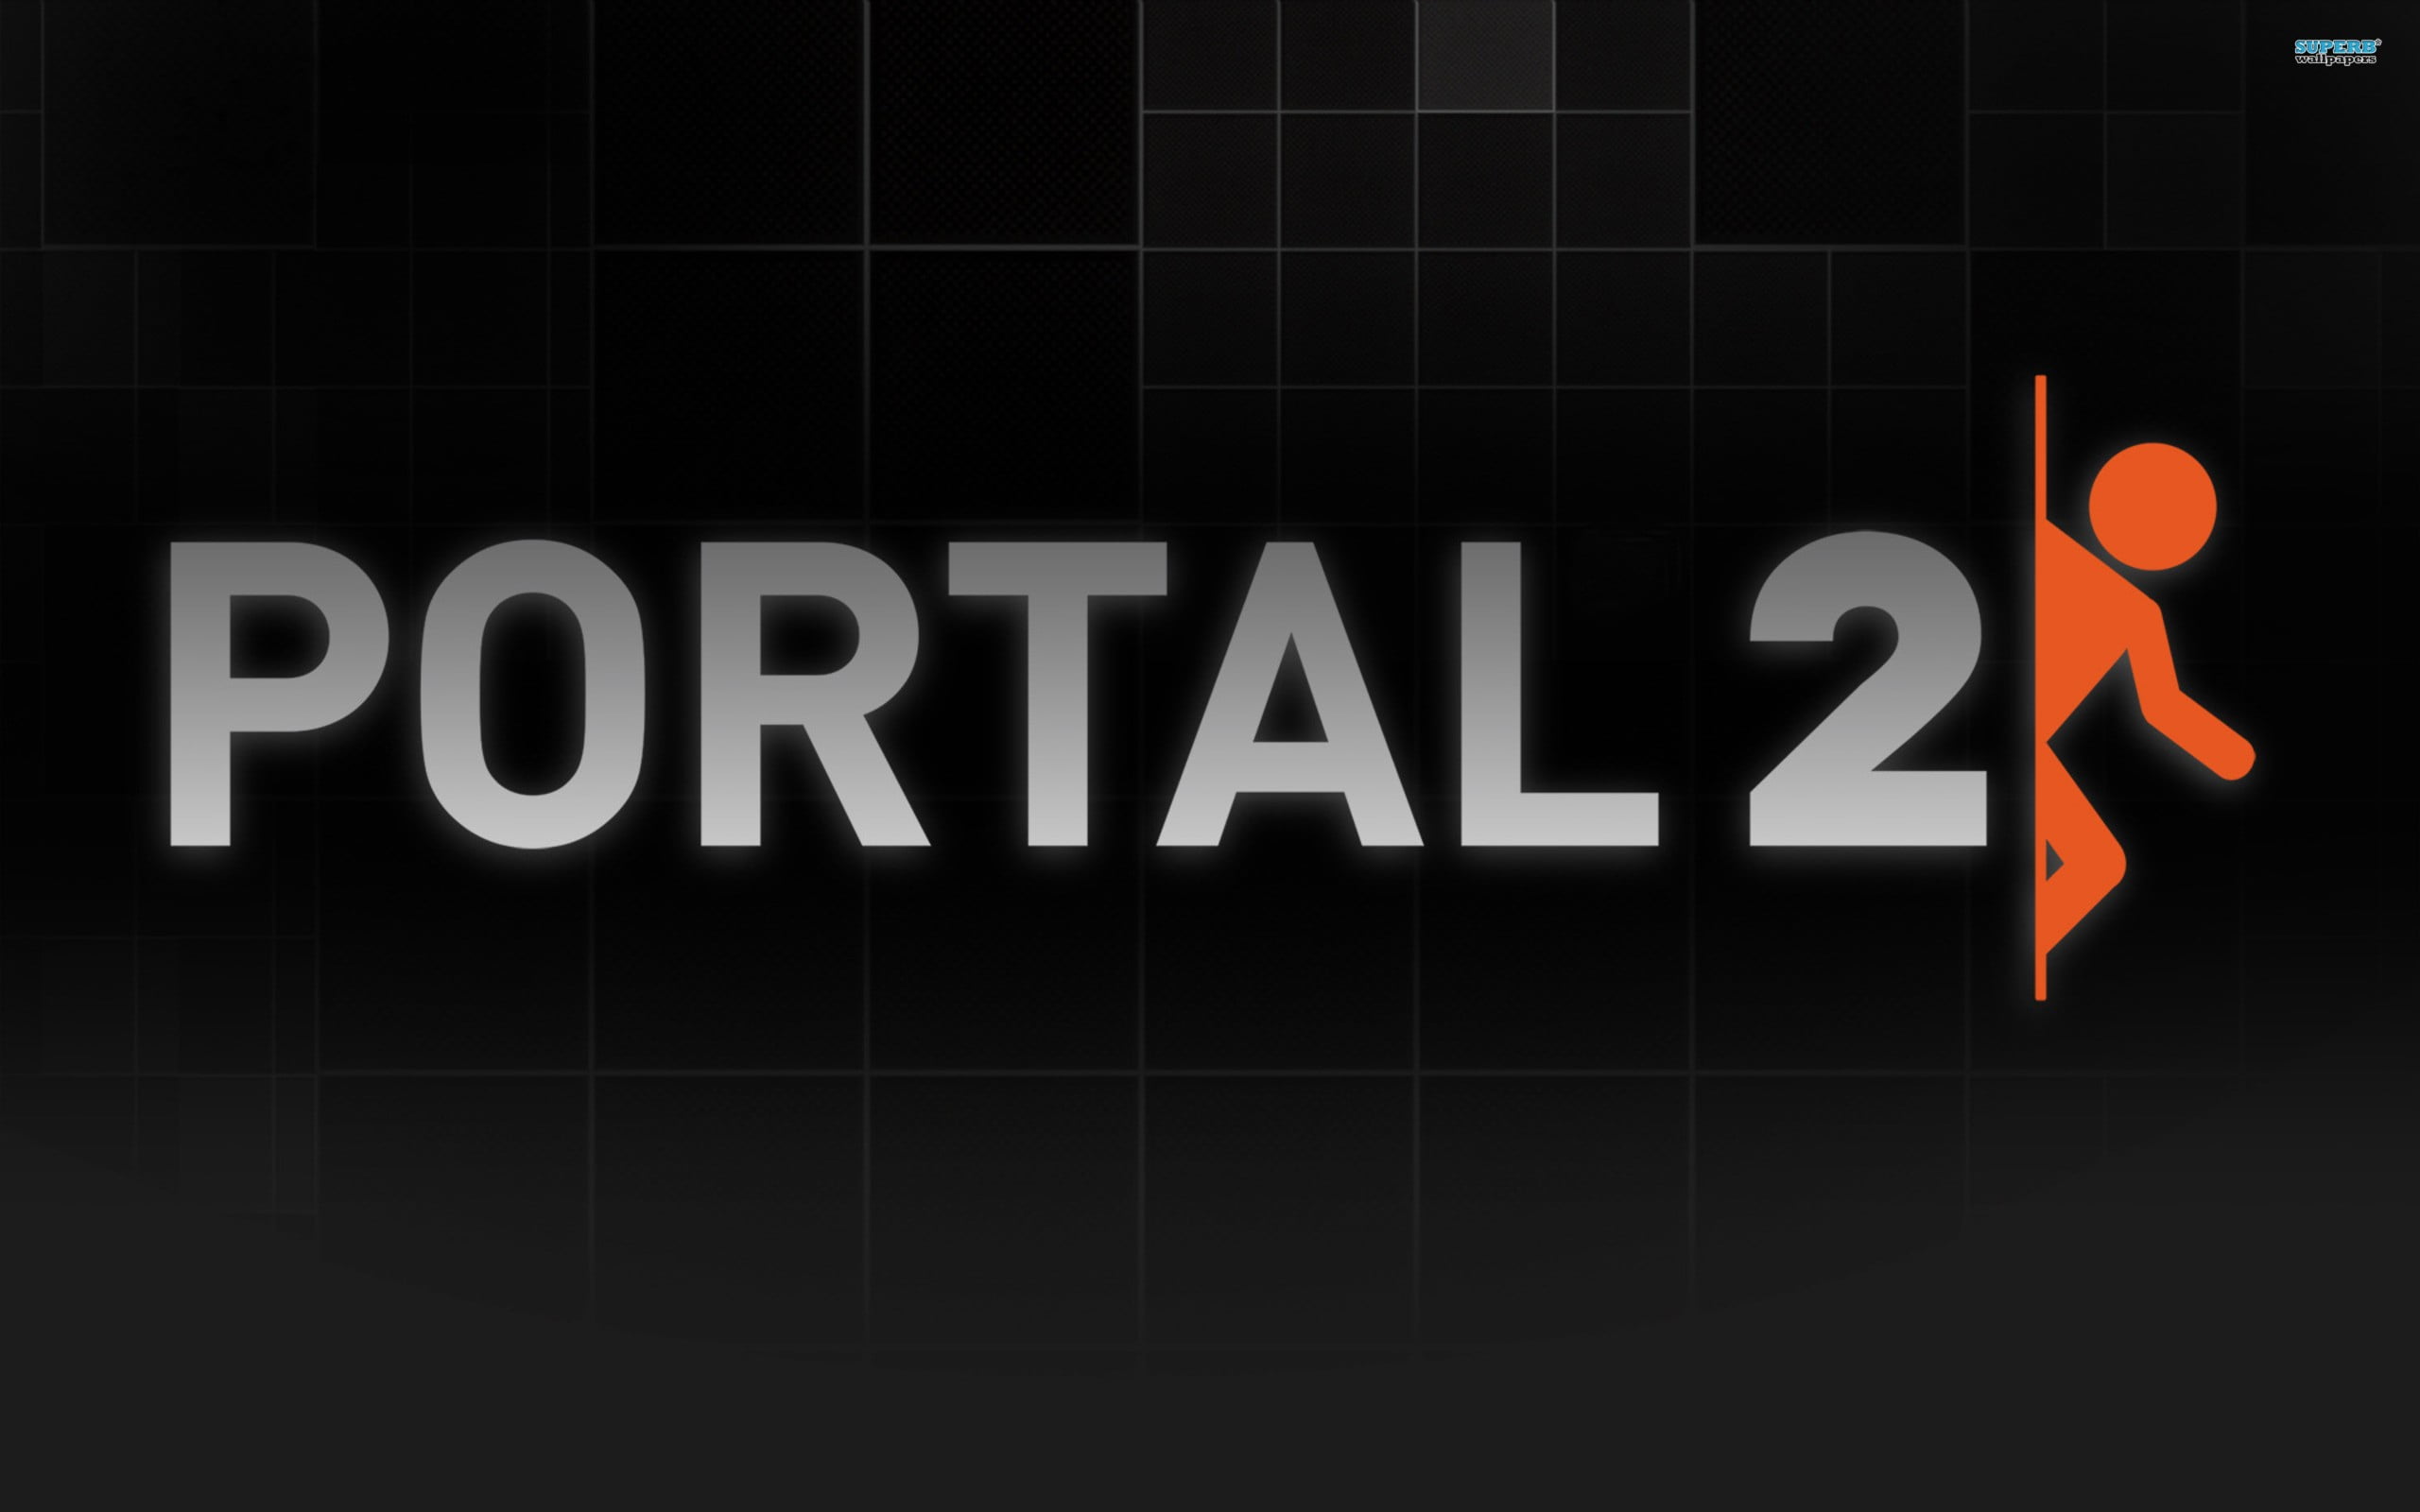 Portal2 logo, Portal 2, video games, artwork, Portal (game)